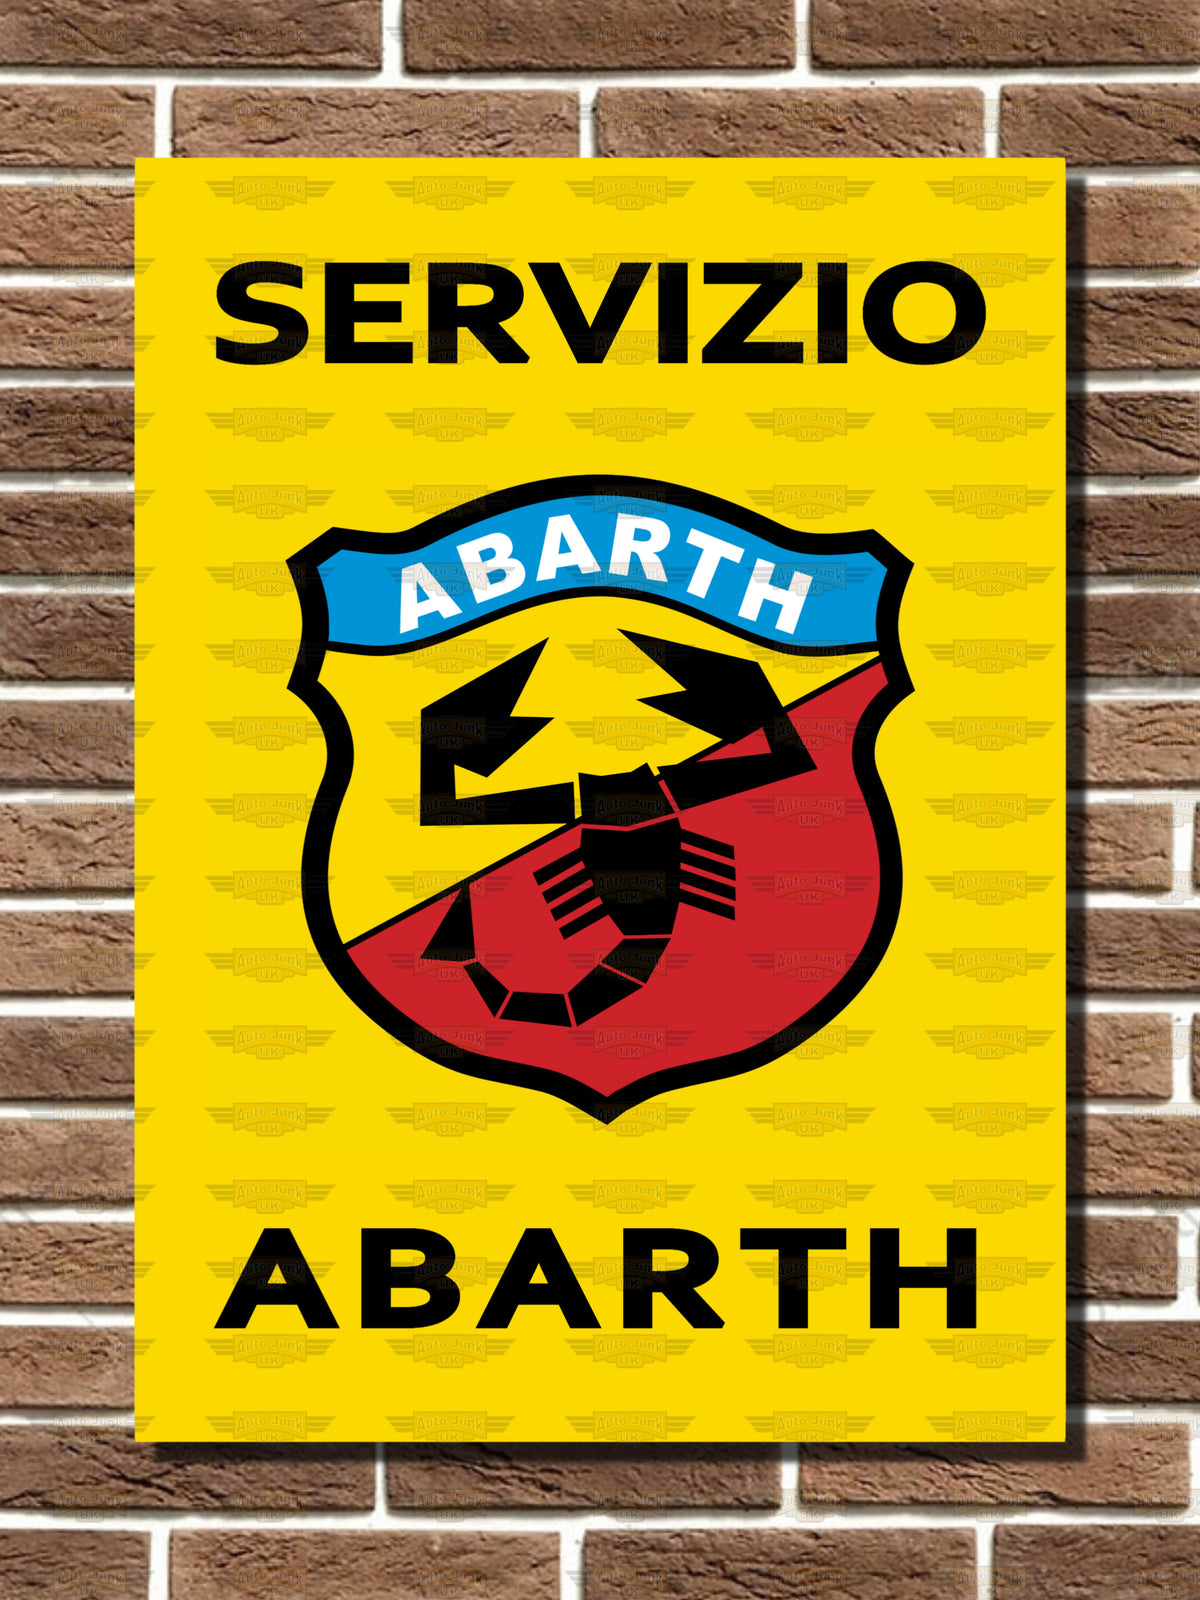 Abarth Servizio Metal Sign